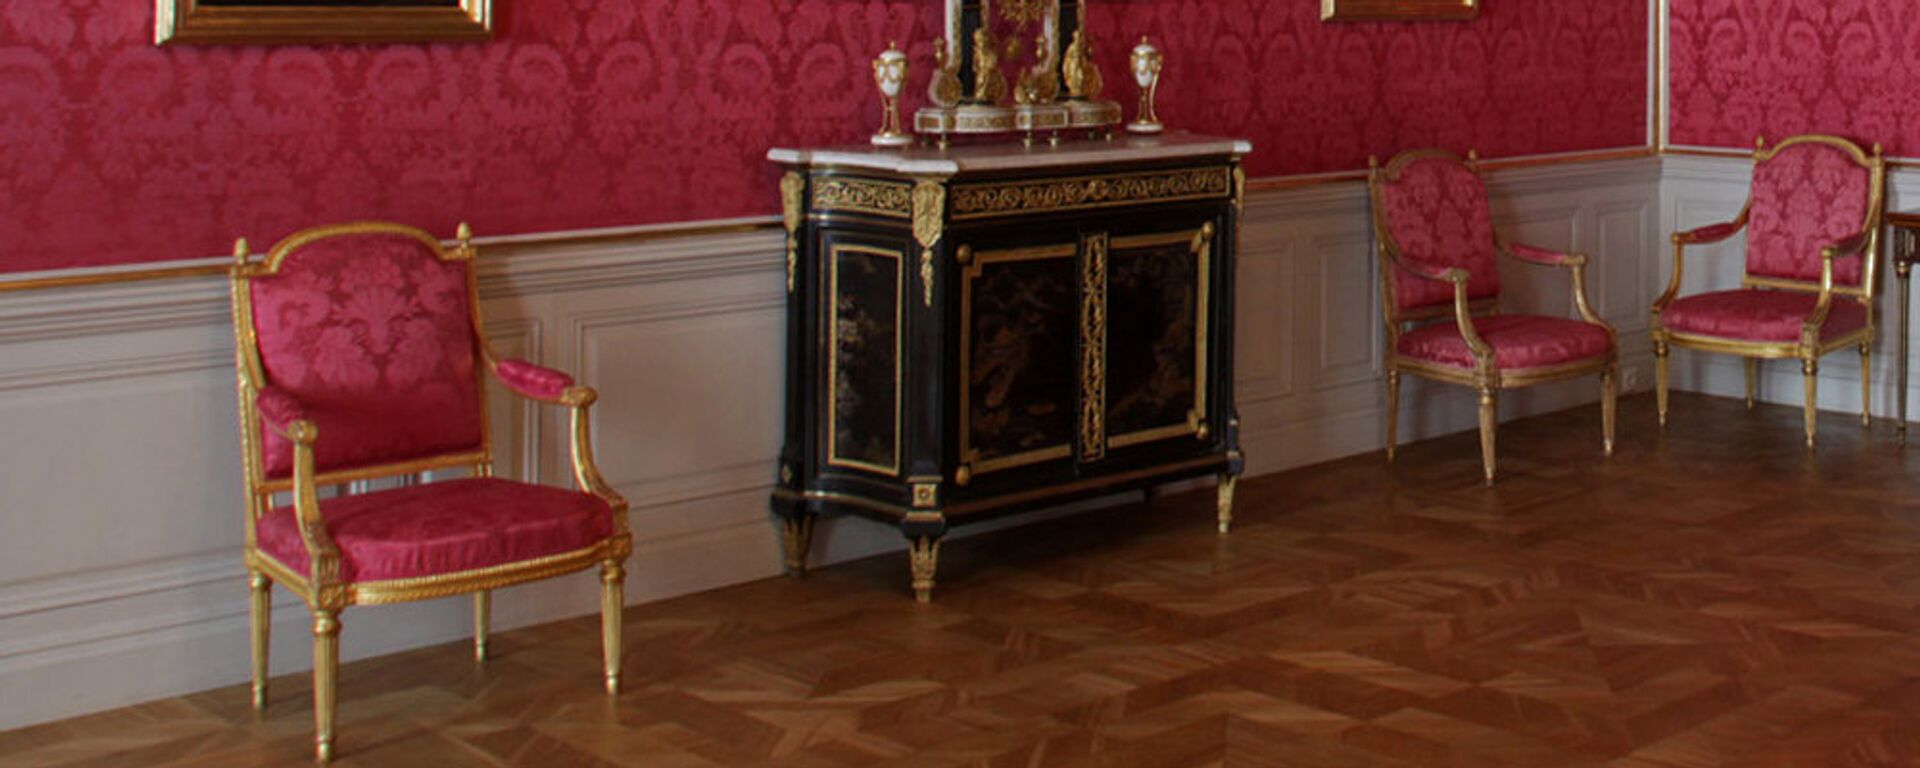 Мебель в Рундальском дворце - Sputnik Латвия, 1920, 24.05.2016